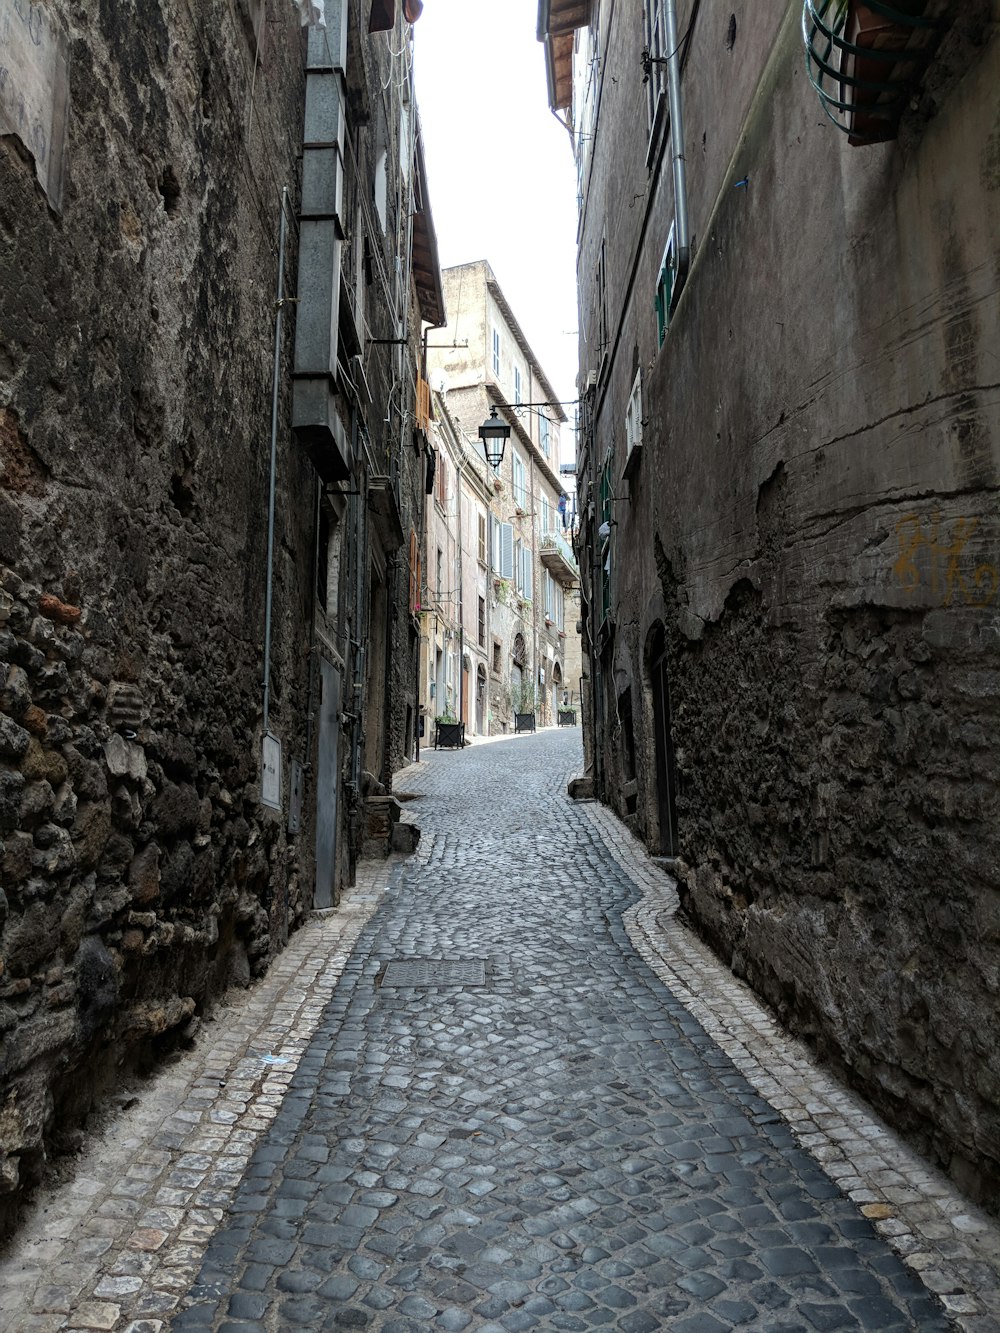 black bricked pavement between buildings